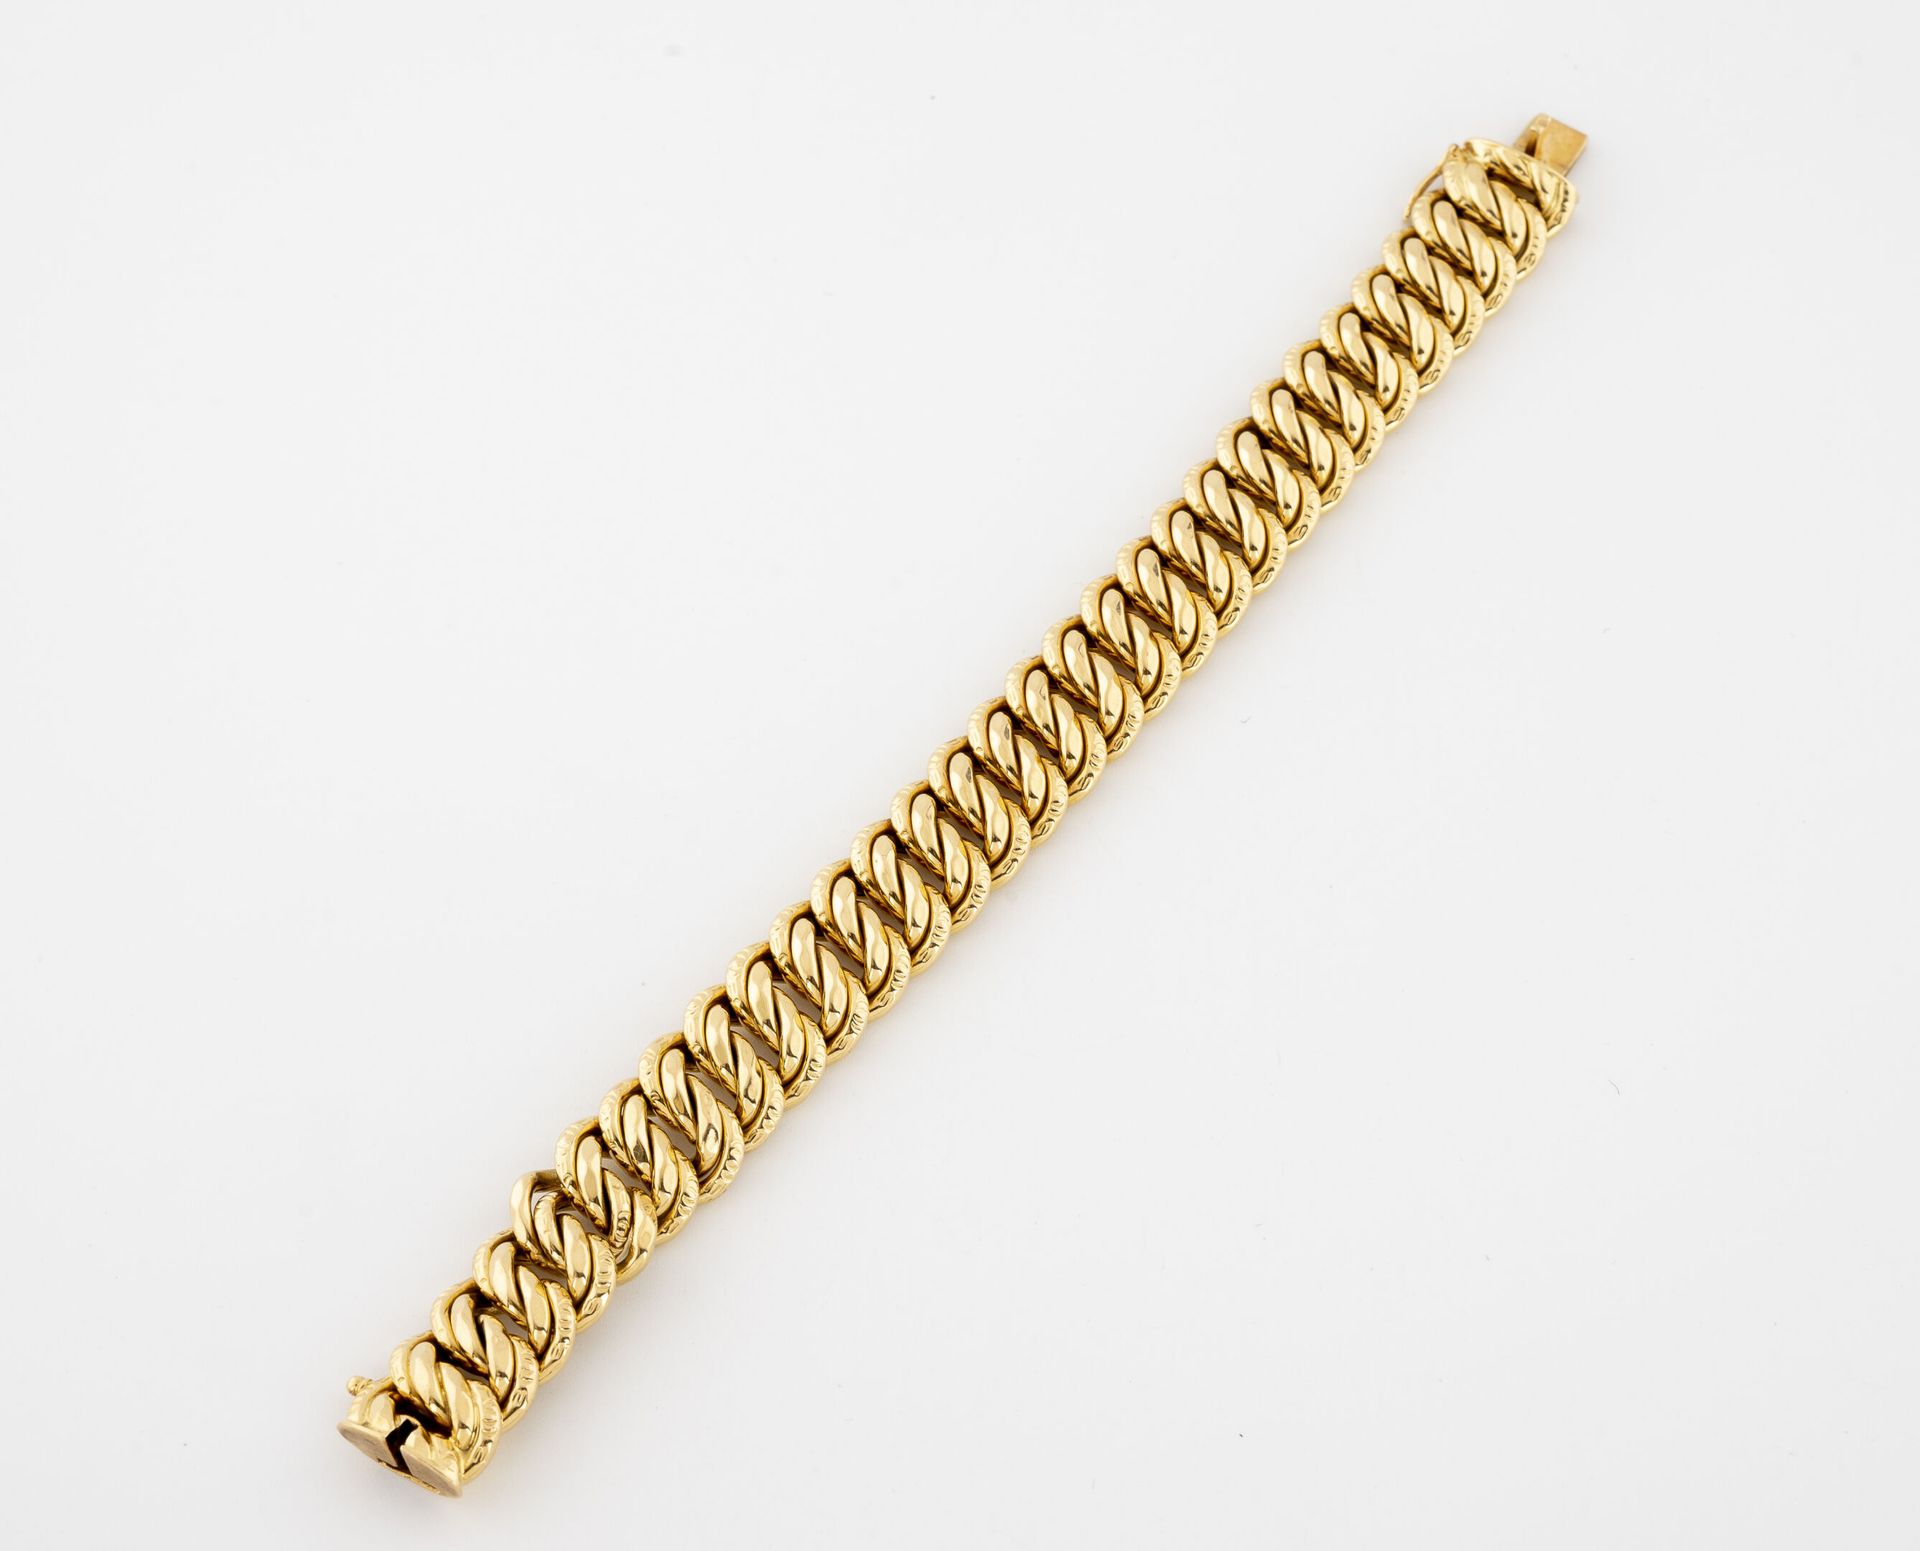 Null Armband aus Gelbgold (750) mit amerikanischem Glied.

Ratschenverschluss mi&hellip;